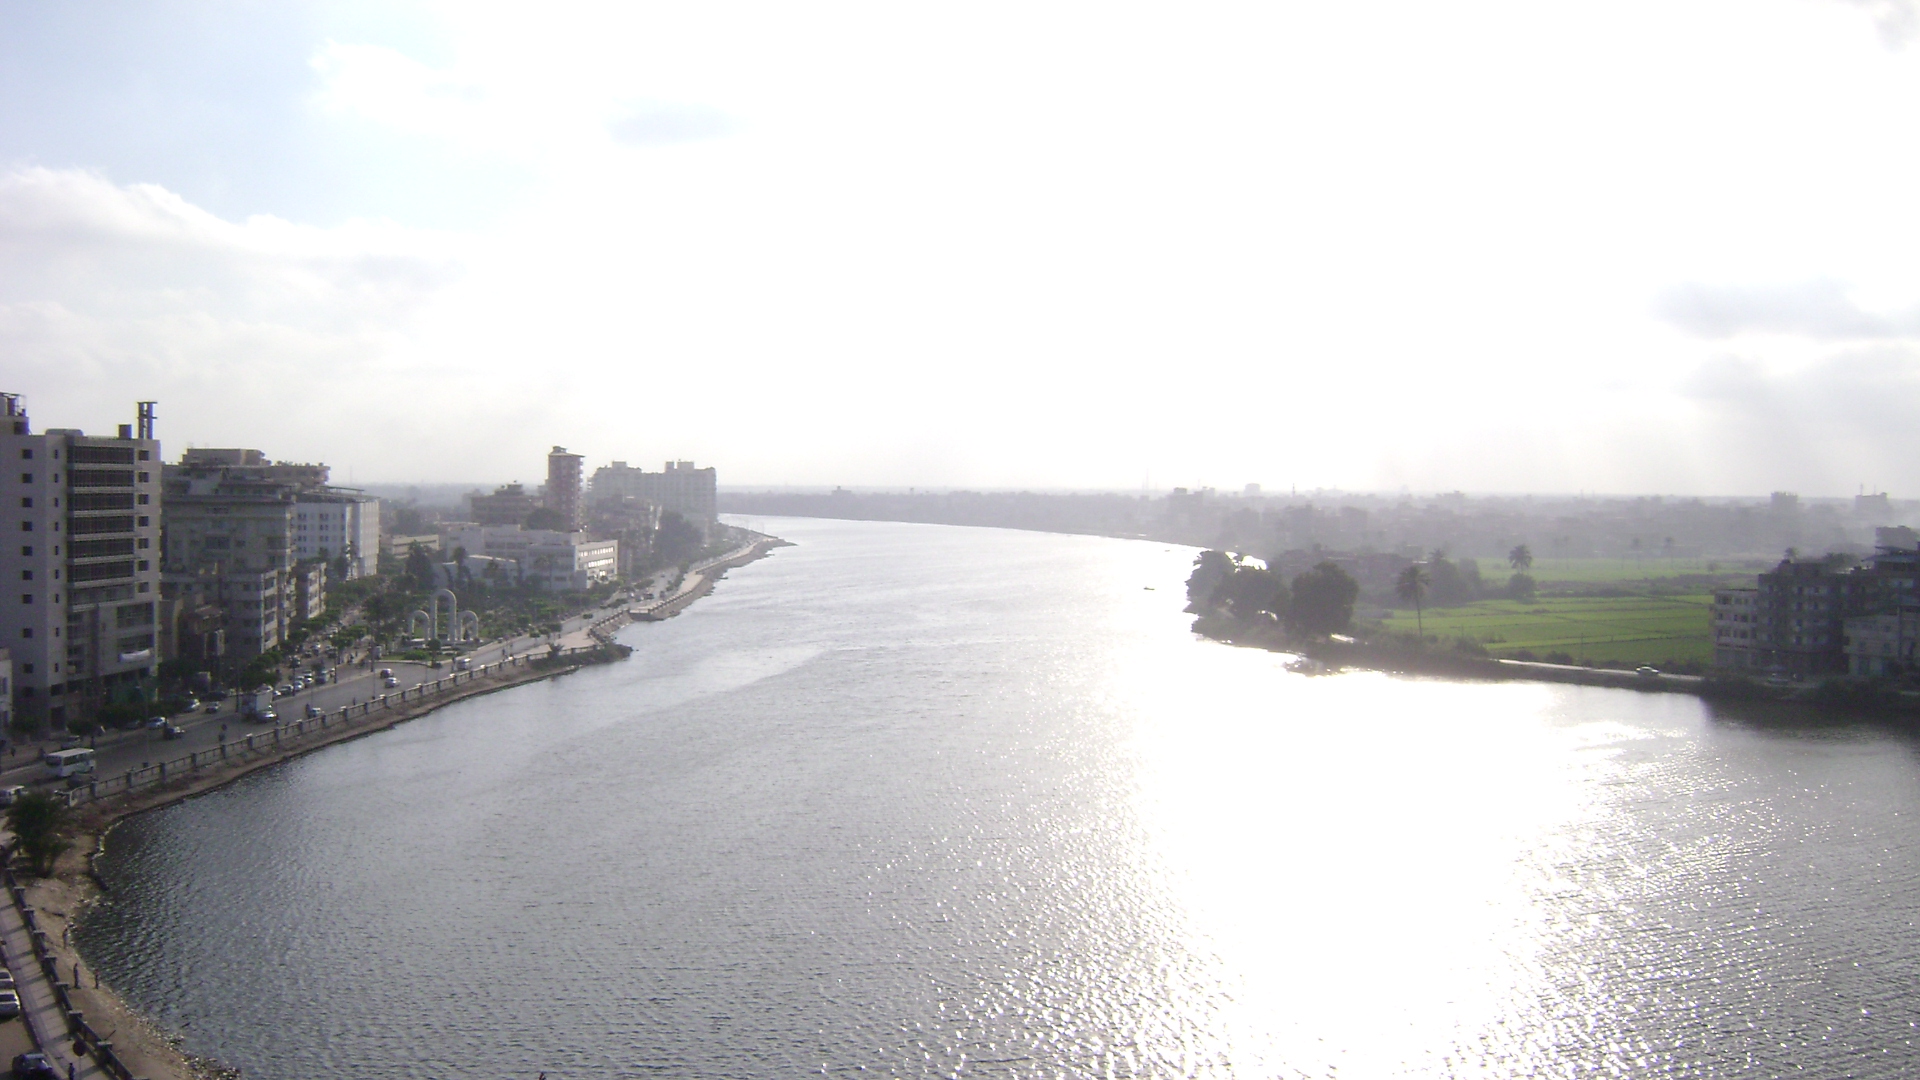 نهر النيل نهر في أفريقيا، وهو أطول نهر في العالم